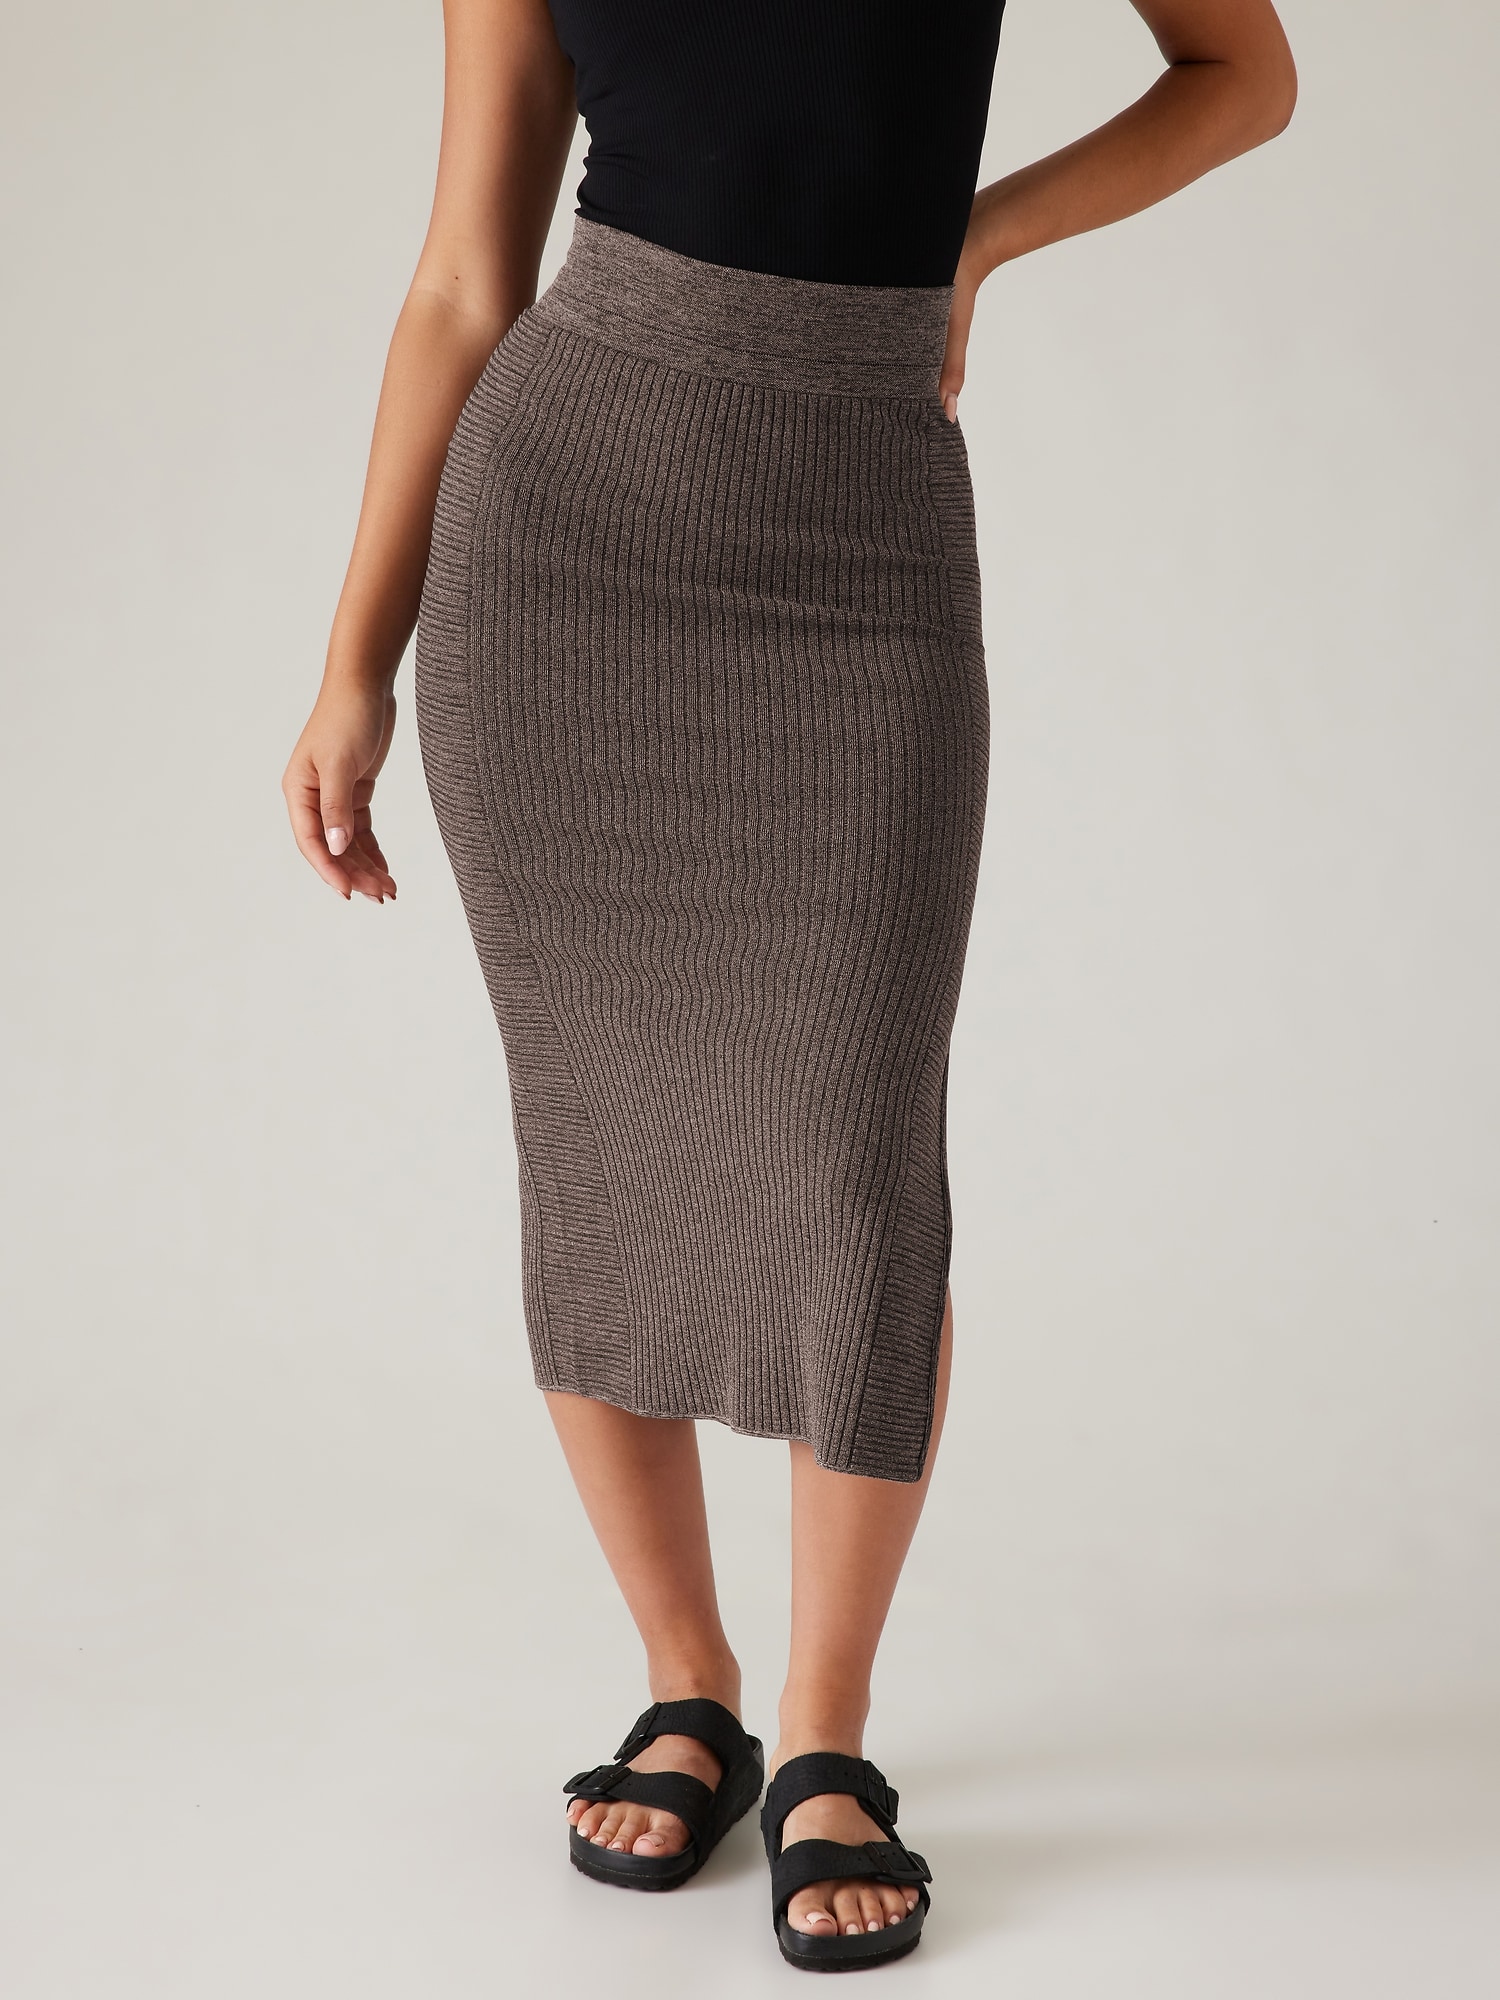 Luxe Seamless Skirt